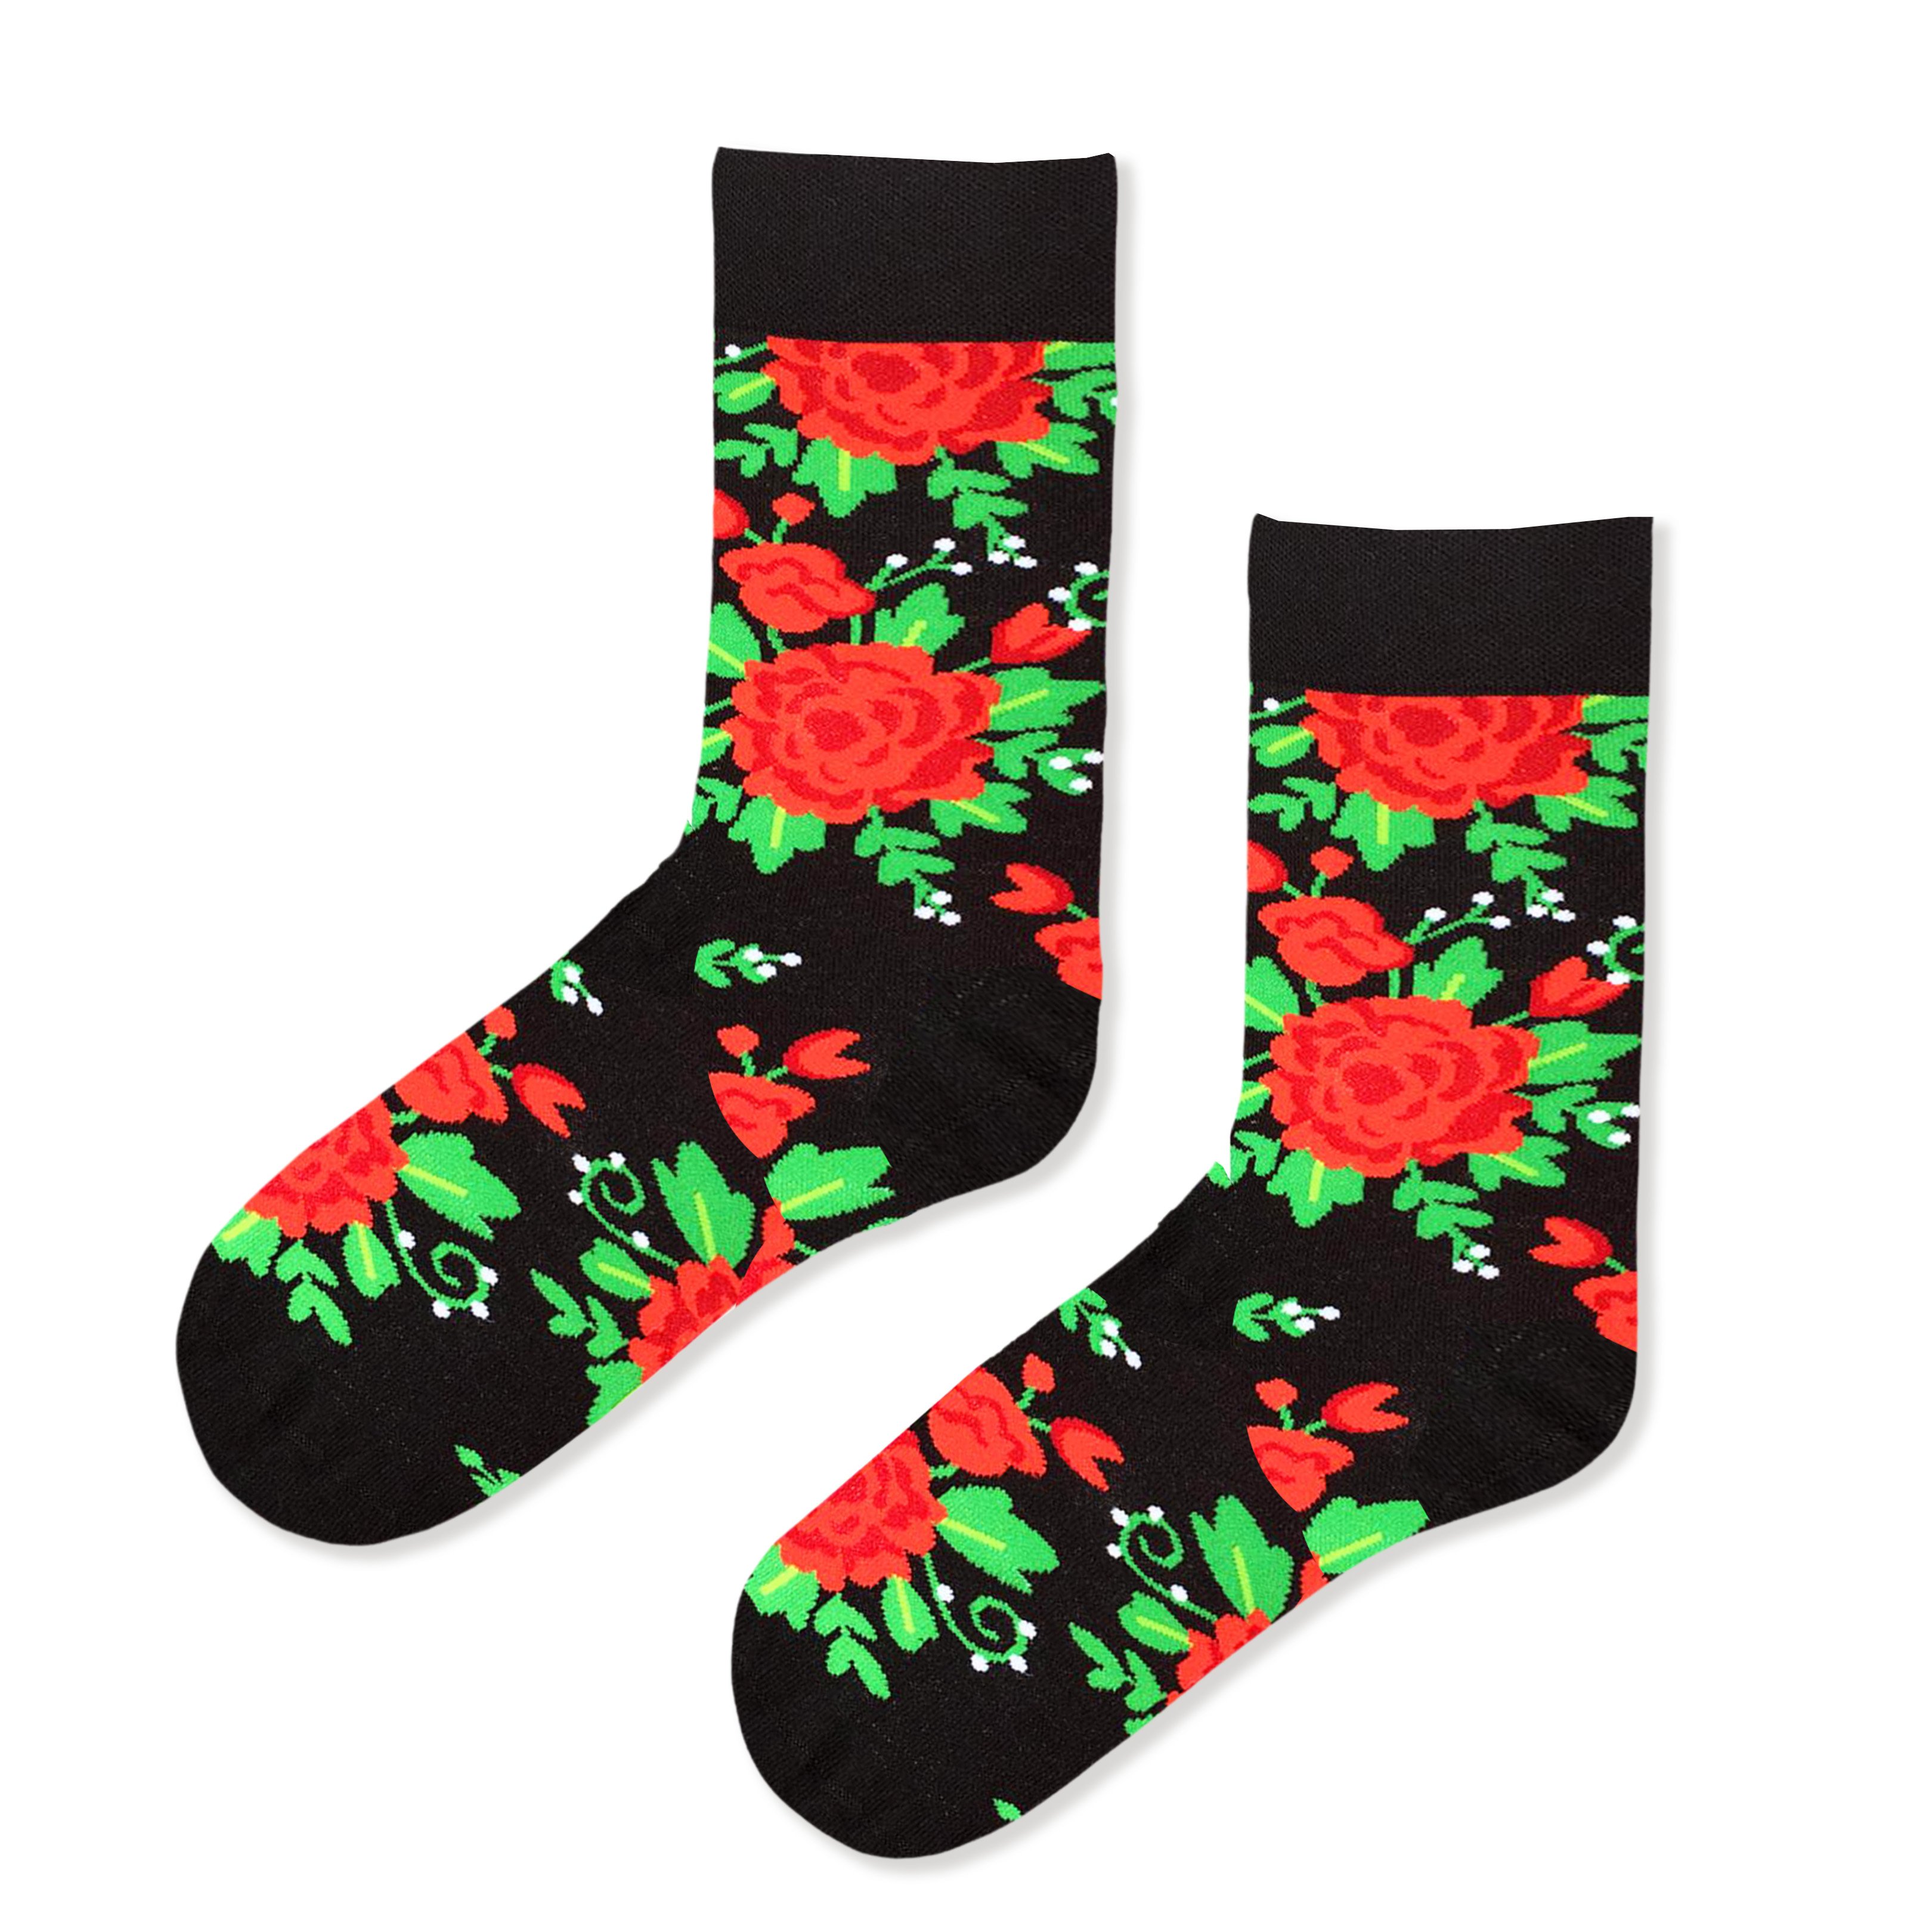 Siyah Kırmızı Çiçek Şekilli Siyah Desenli Çorap Renkli Çoraplar